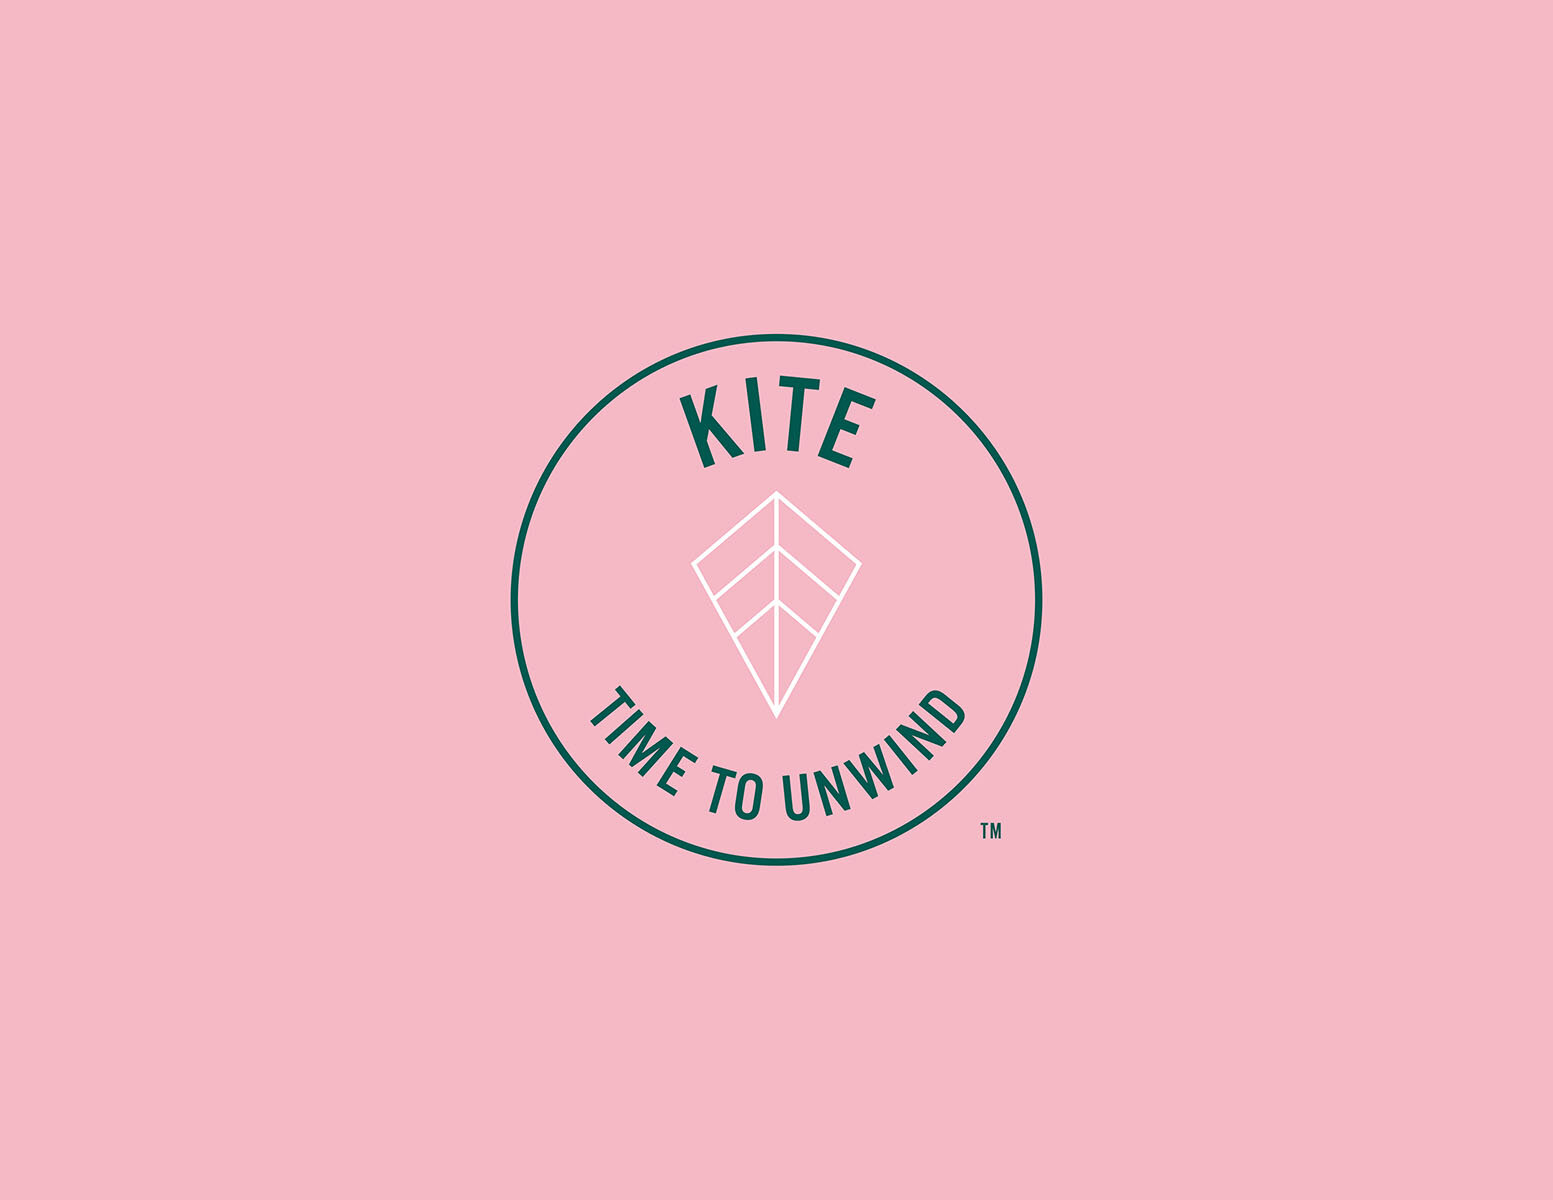 Kite_02.jpg